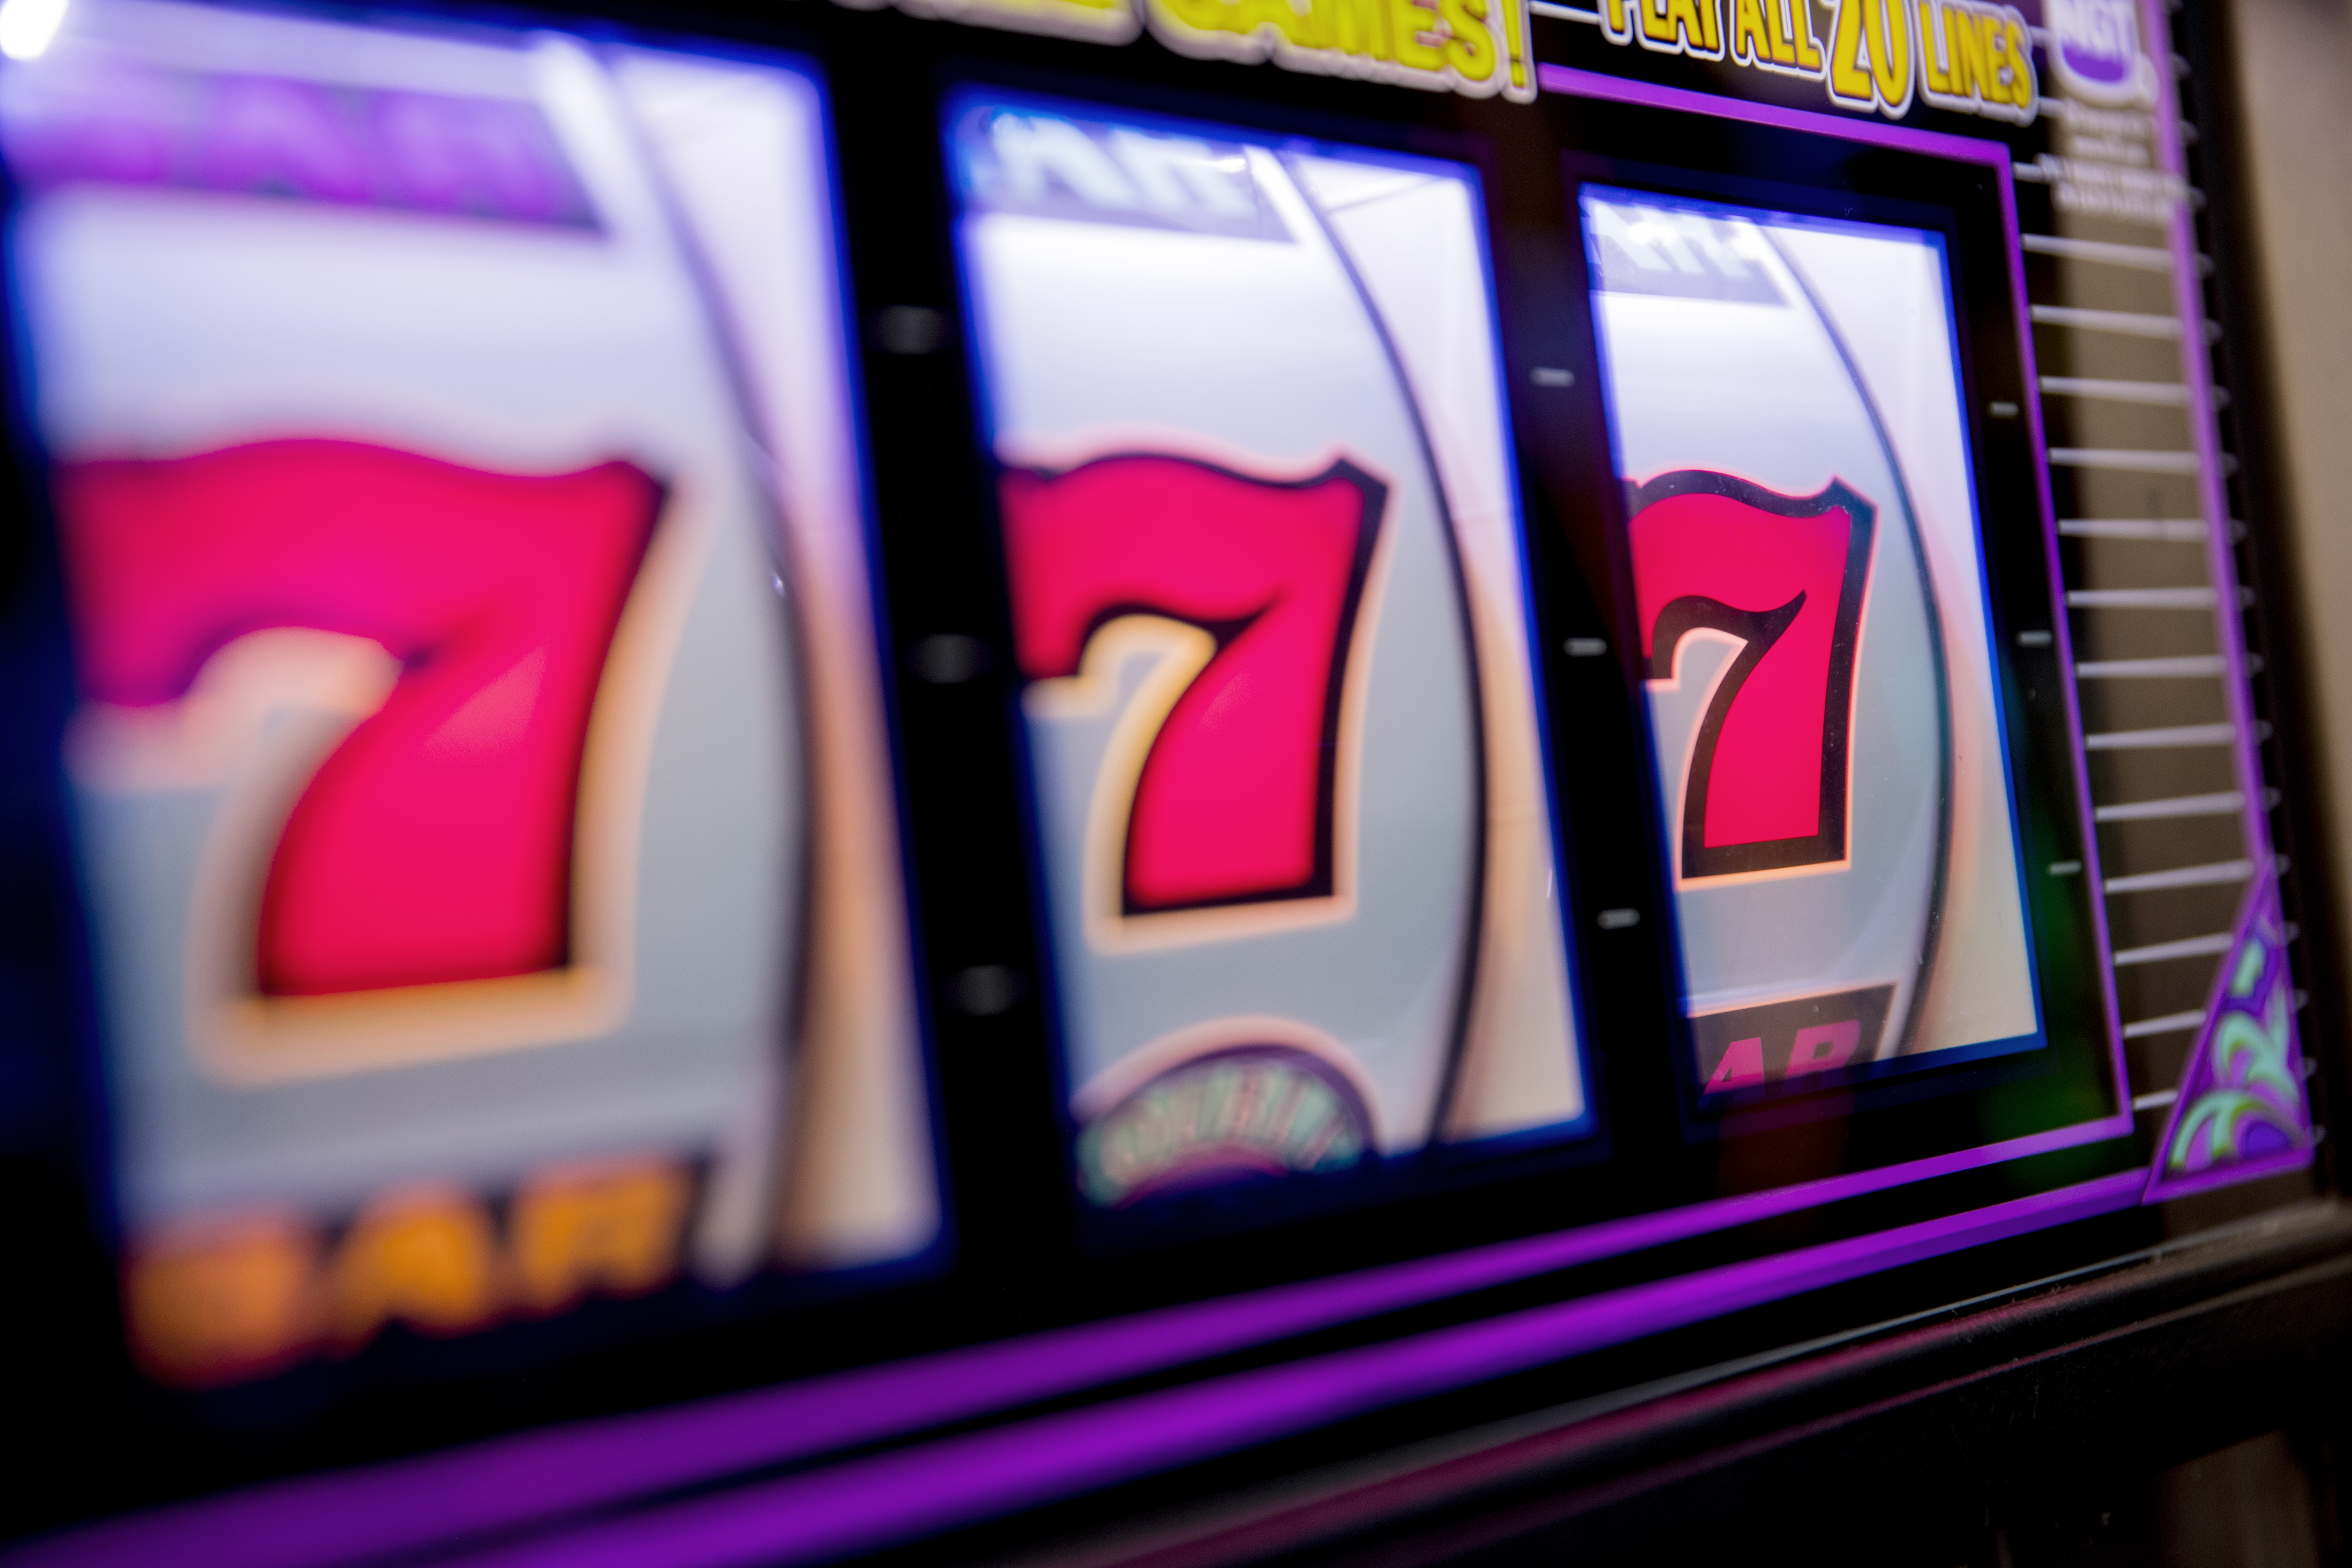 rush rewards rivers casino pittsburgh